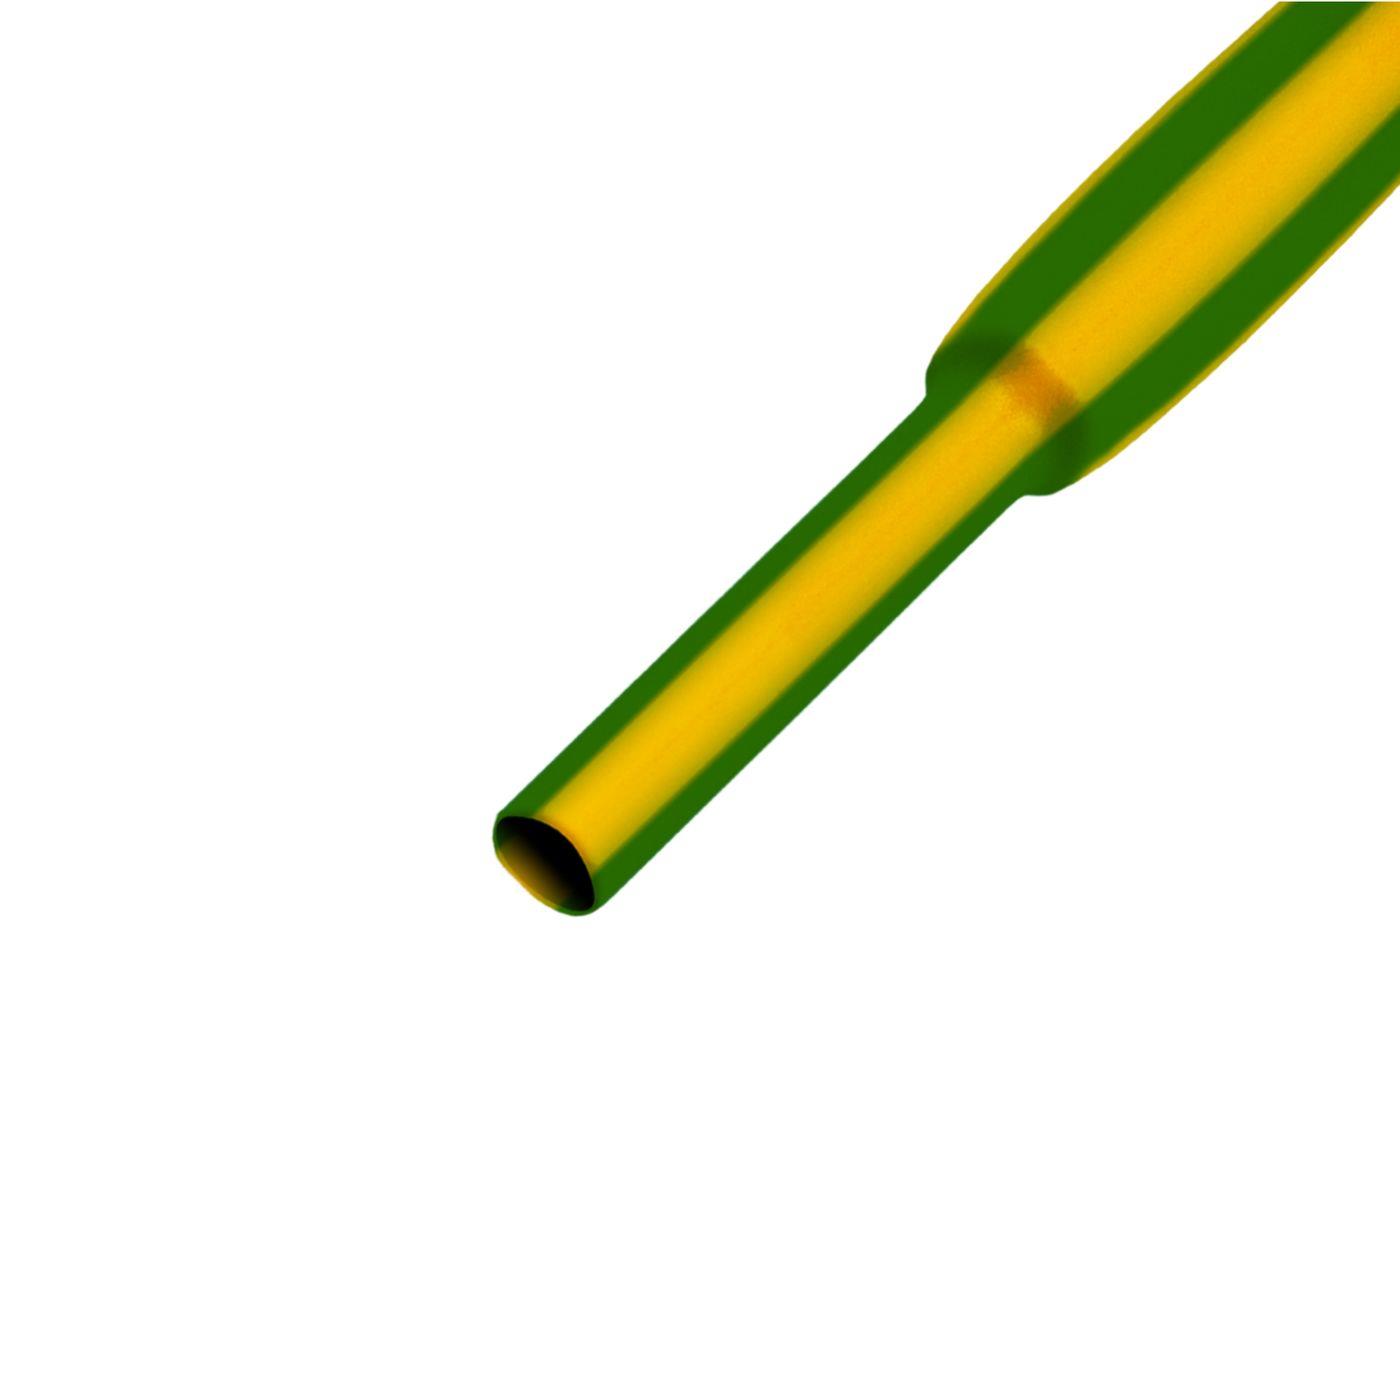 11,5m Schrumpfschlauch Box 2:1 3,2 -> 1,6mm Grün Gelb Flexibel